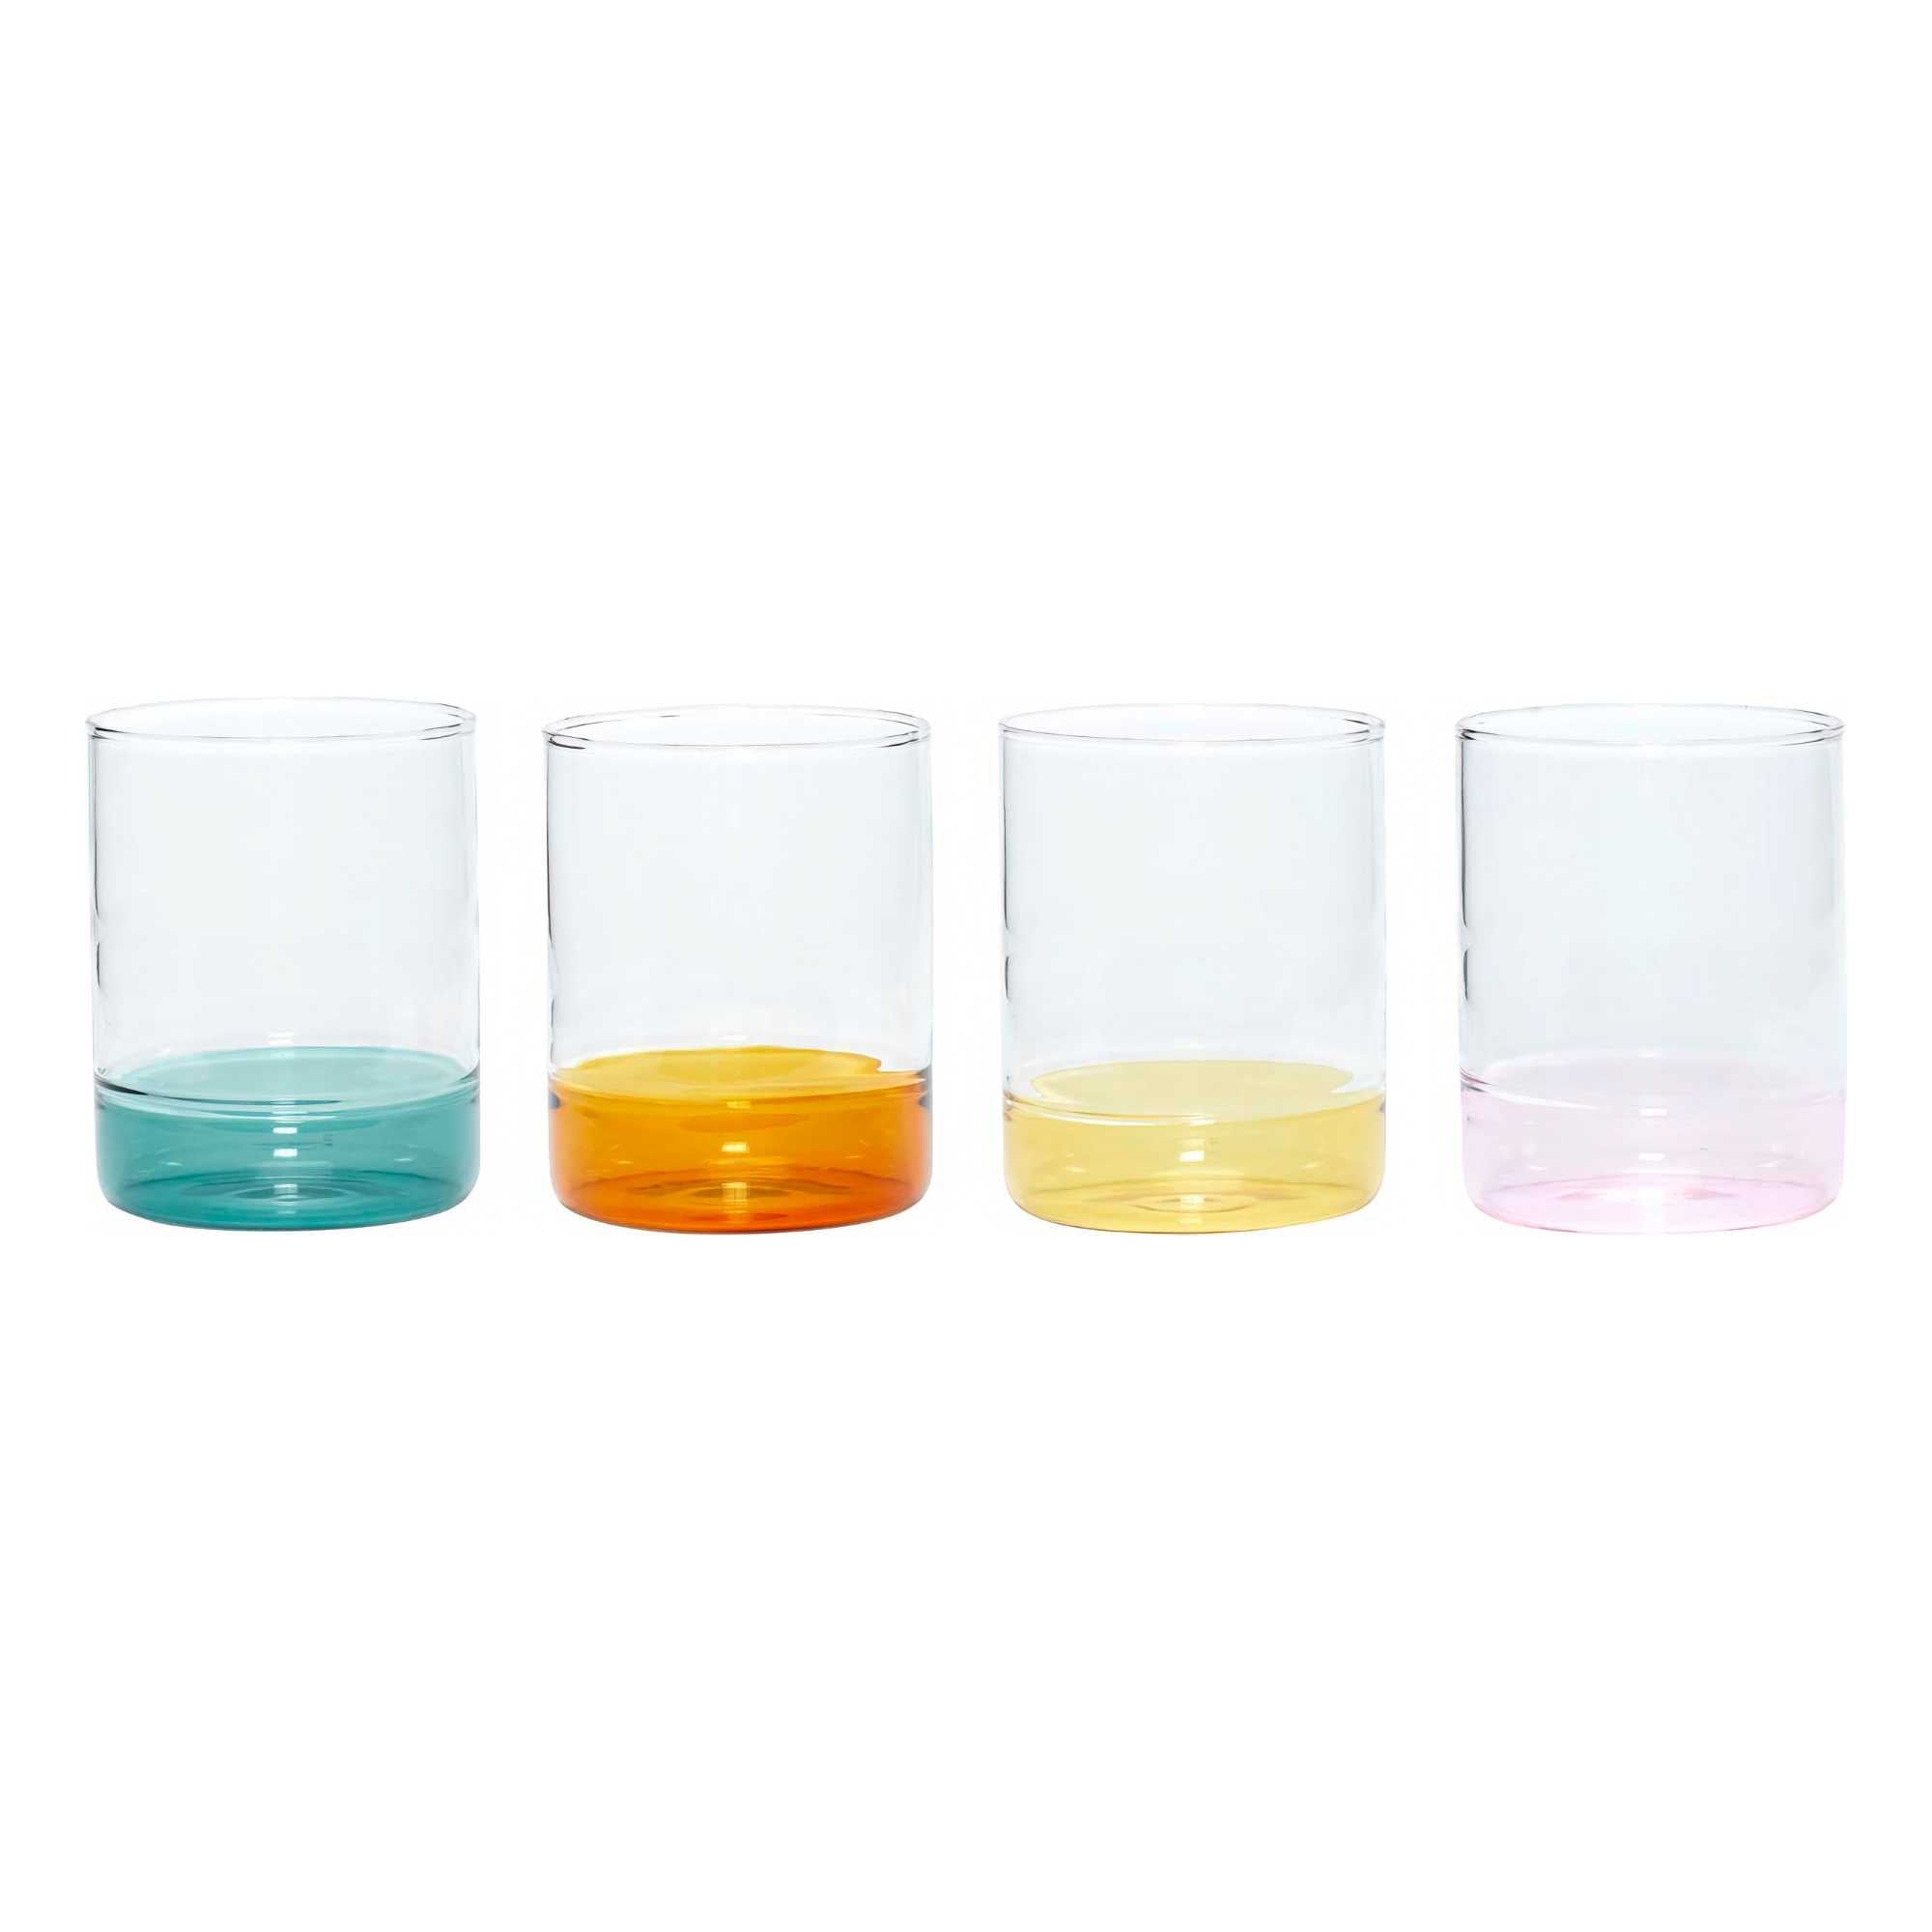 Hübsch Kiosk Drinking Glass (Set of 4)